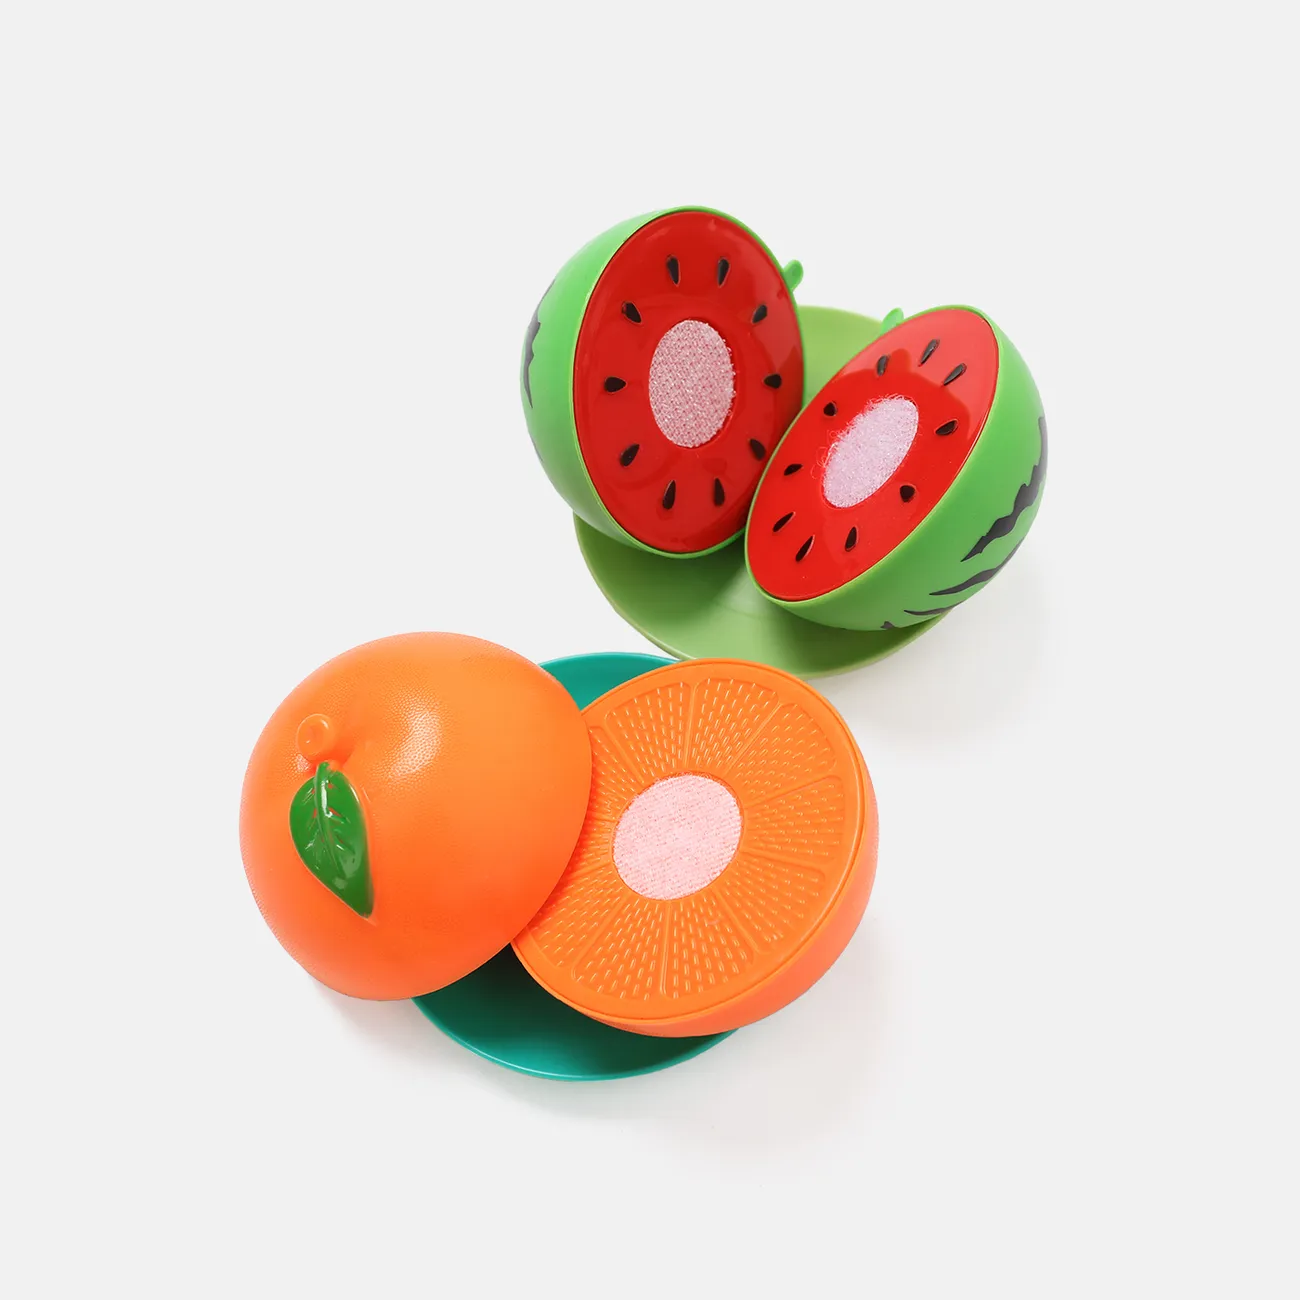 16 Stück bpa-freies Plastikschneidespielzeug für Kinder, schneidbares Obst-Gemüse-Set mit Messern, Schneidebrett und Tellern (Messerfarbe zufällig) Farbe-A big image 1